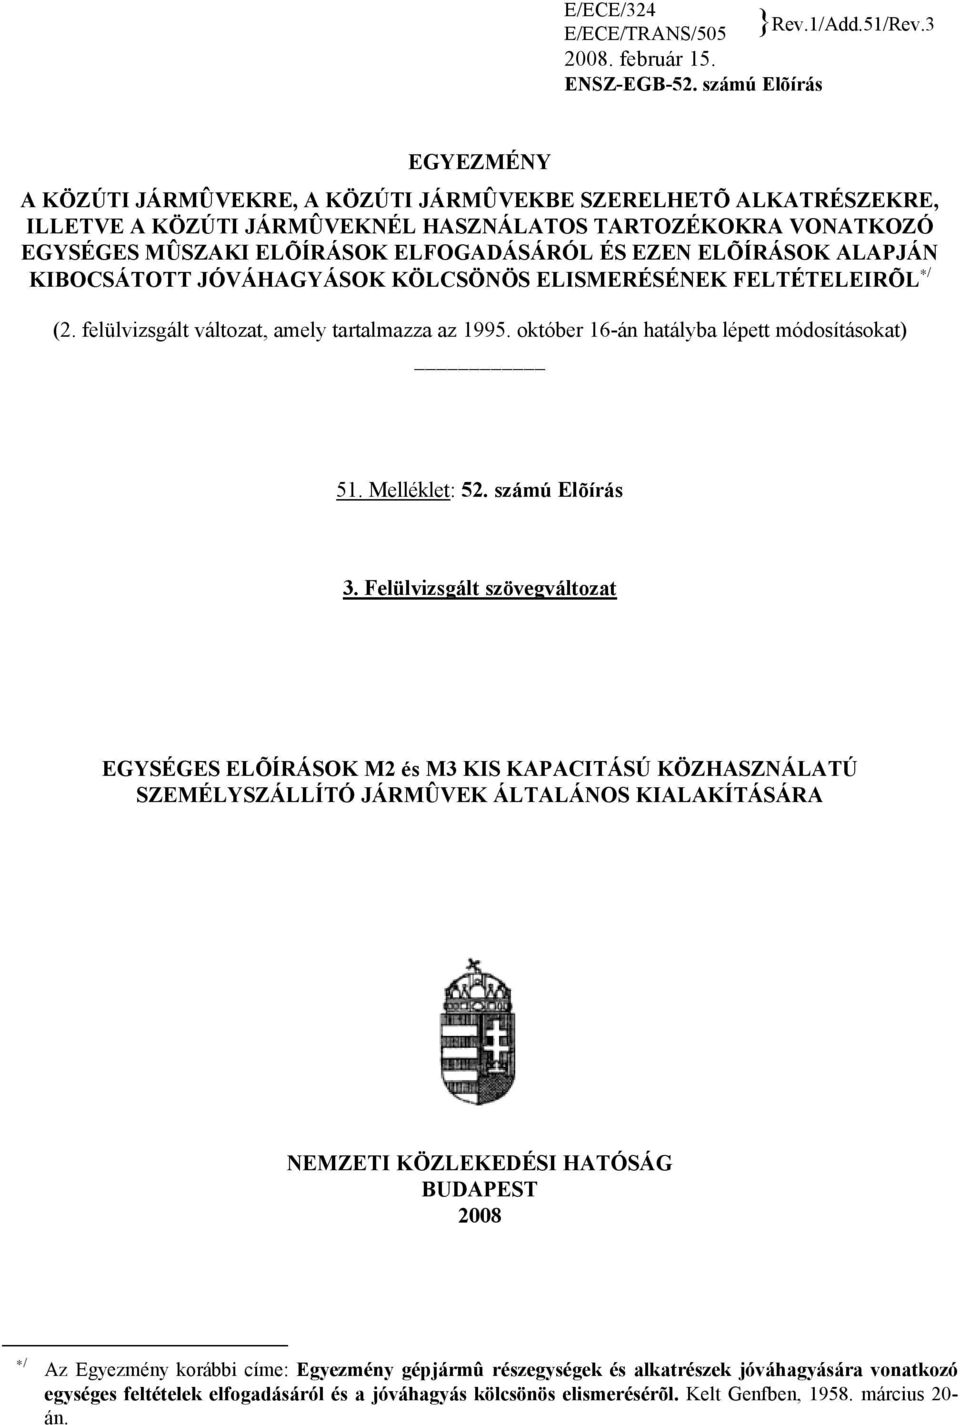 EZEN ELÕÍRÁSOK ALAPJÁN KIBOCSÁTOTT JÓVÁHAGYÁSOK KÖLCSÖNÖS ELISMERÉSÉNEK FELTÉTELEIRÕL / (2. felülvizsgált változat, amely tartalmazza az 1995. október 16-án hatályba lépett módosításokat) 51.